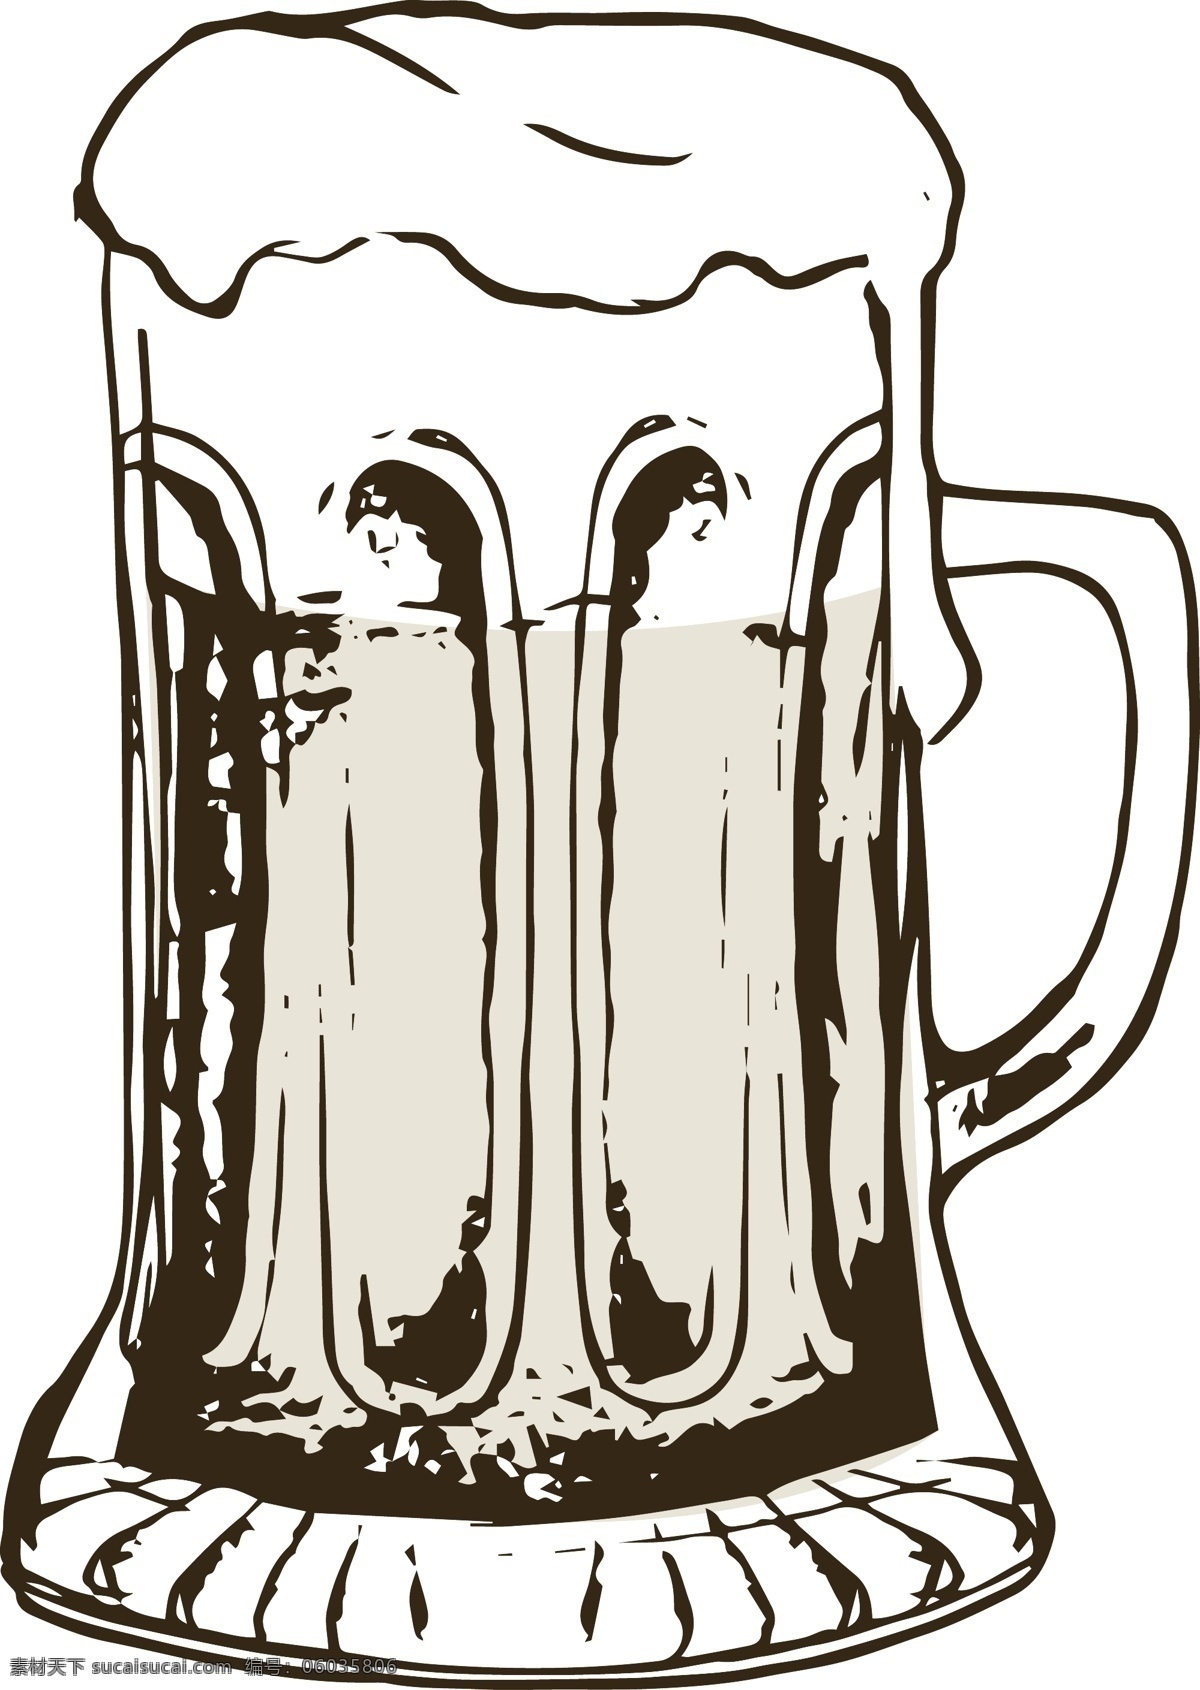 矢量 卡通 线 稿 美食 啤酒杯 菜单 商业 创意 元素 线稿 装饰图案 排版 排版设计